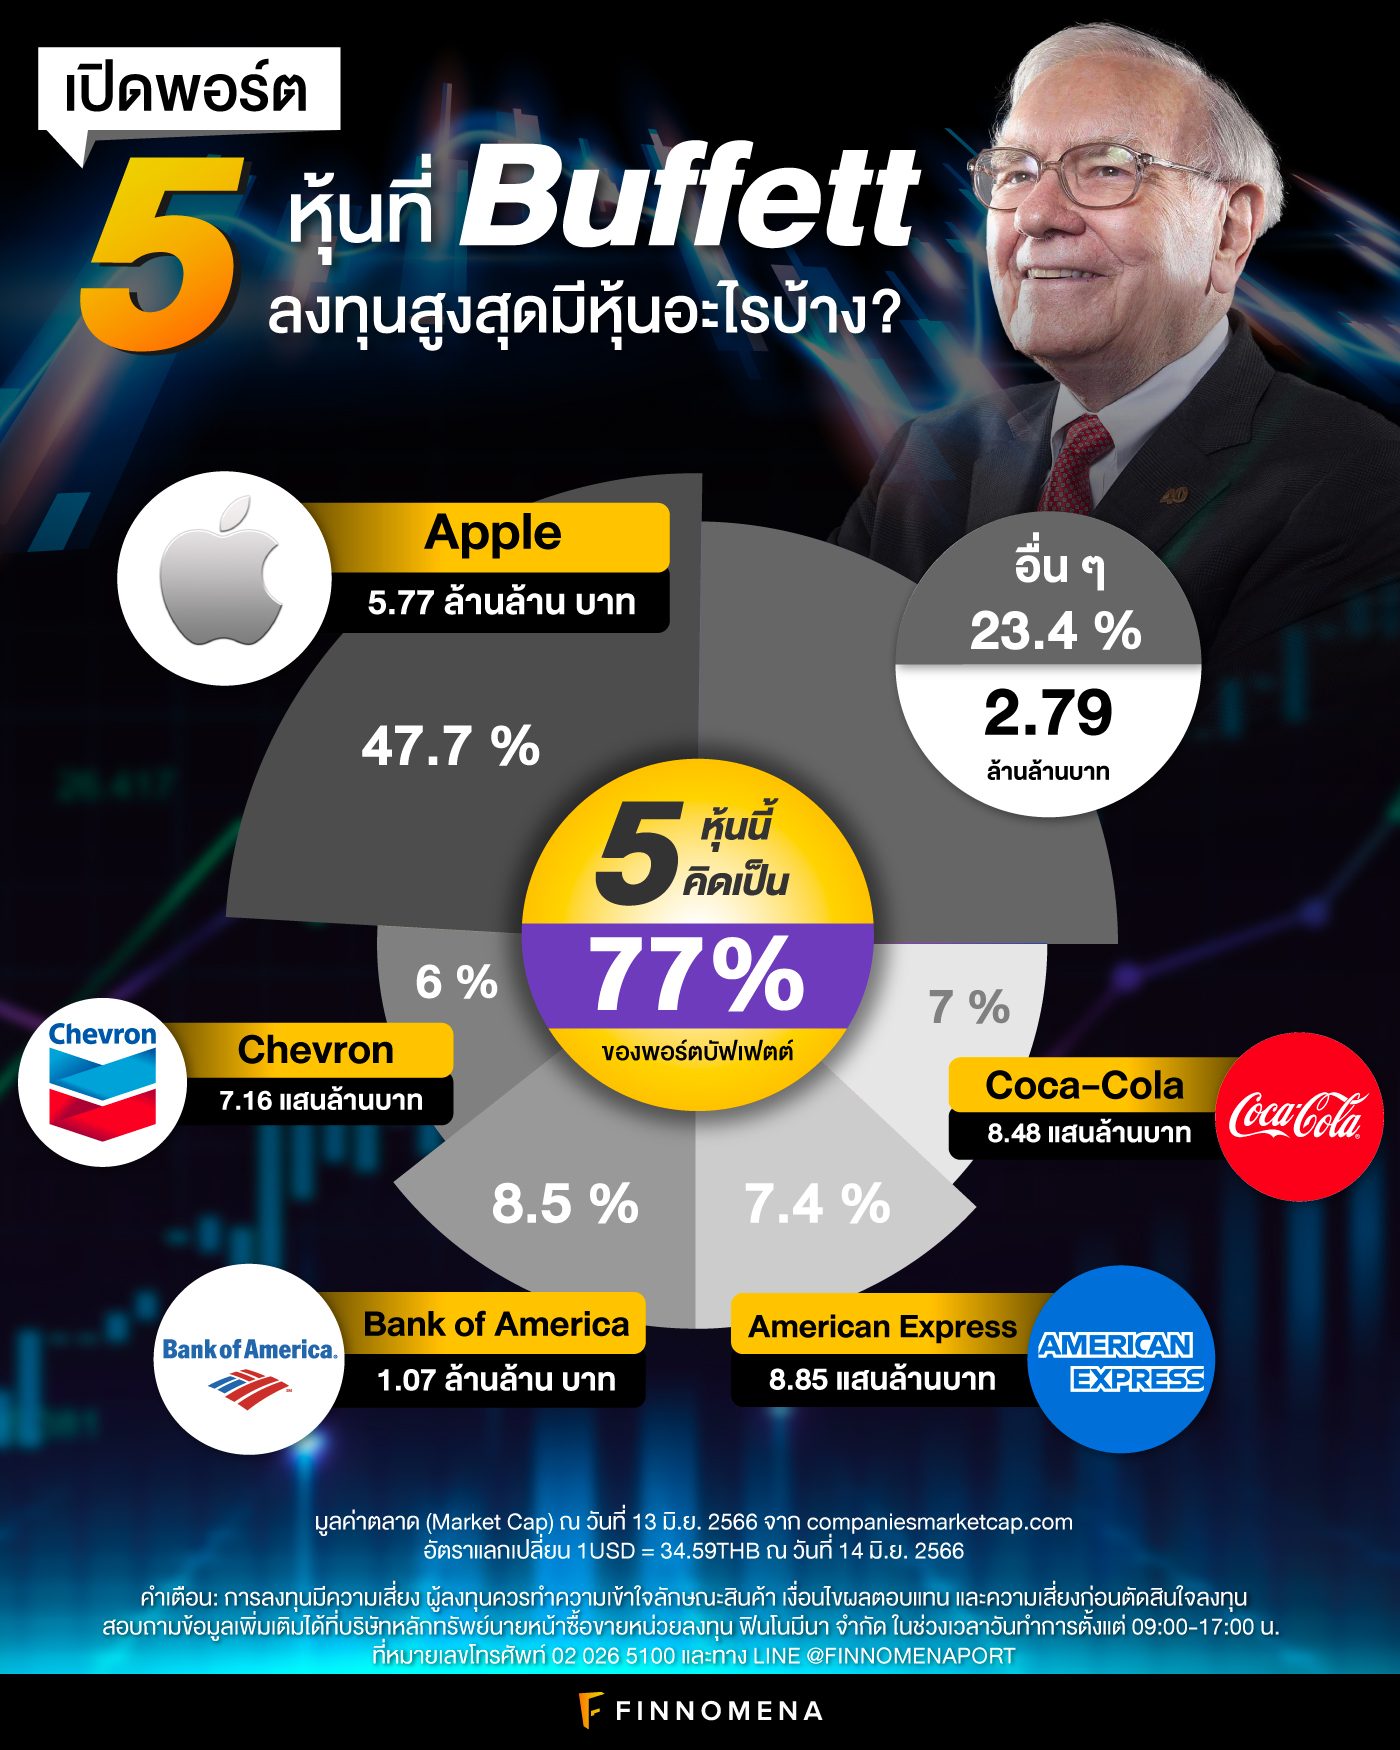 เปิดพอร์ต 5 หุ้นที่ Buffett ลงทุนสูงสุด มีหุ้นอะไรบ้าง?